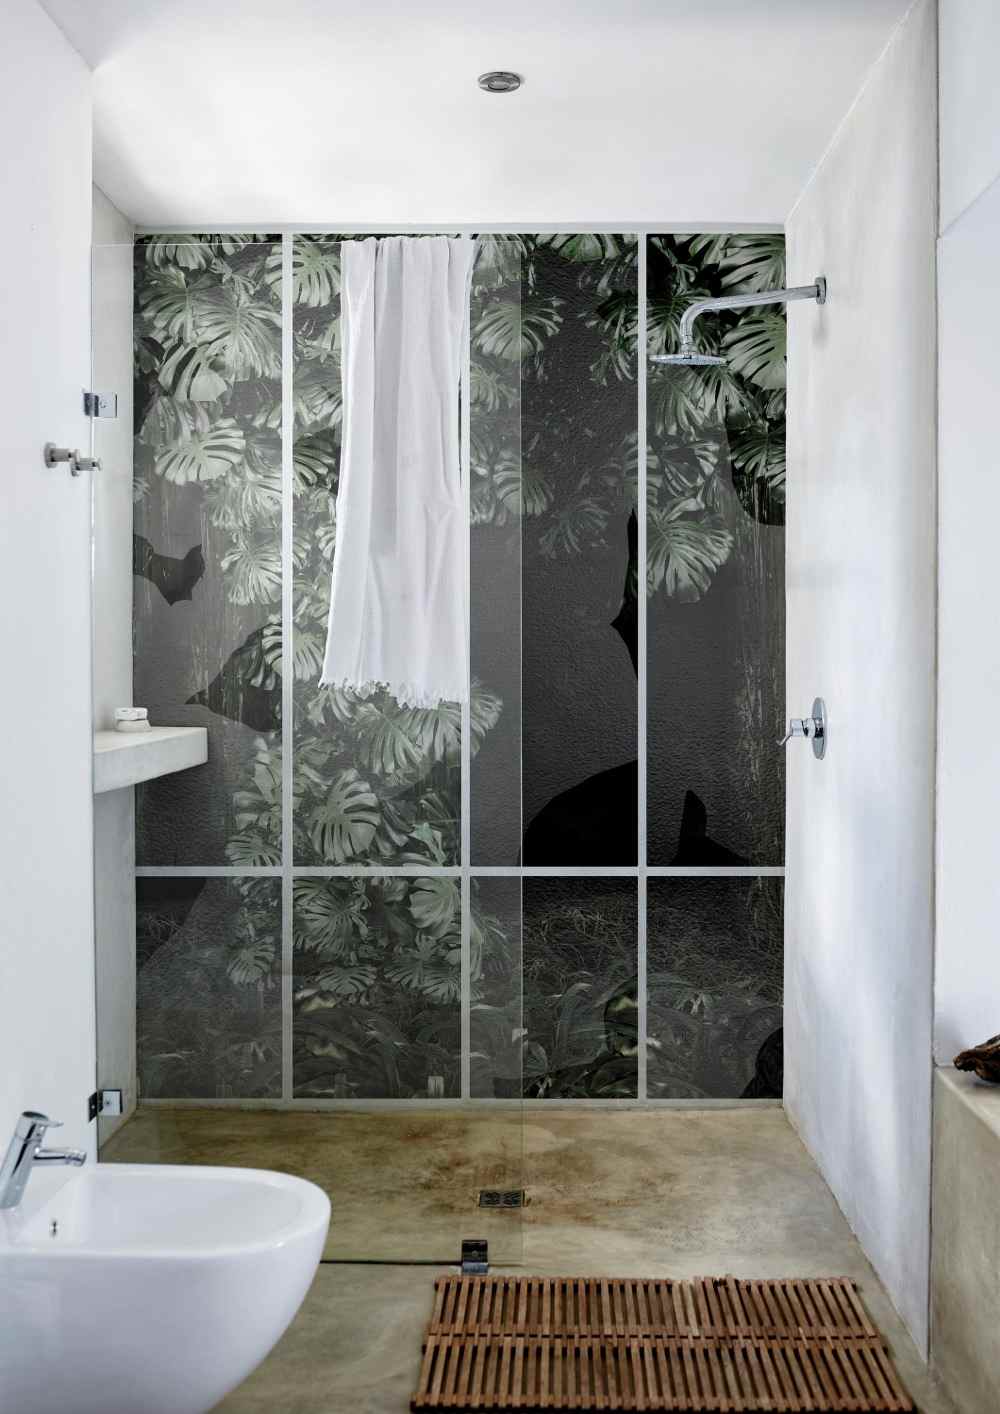 Papel de parede fotográfico como revestimento de parede e uma alternativa aos azulejos no banheiro com área de chuveiro